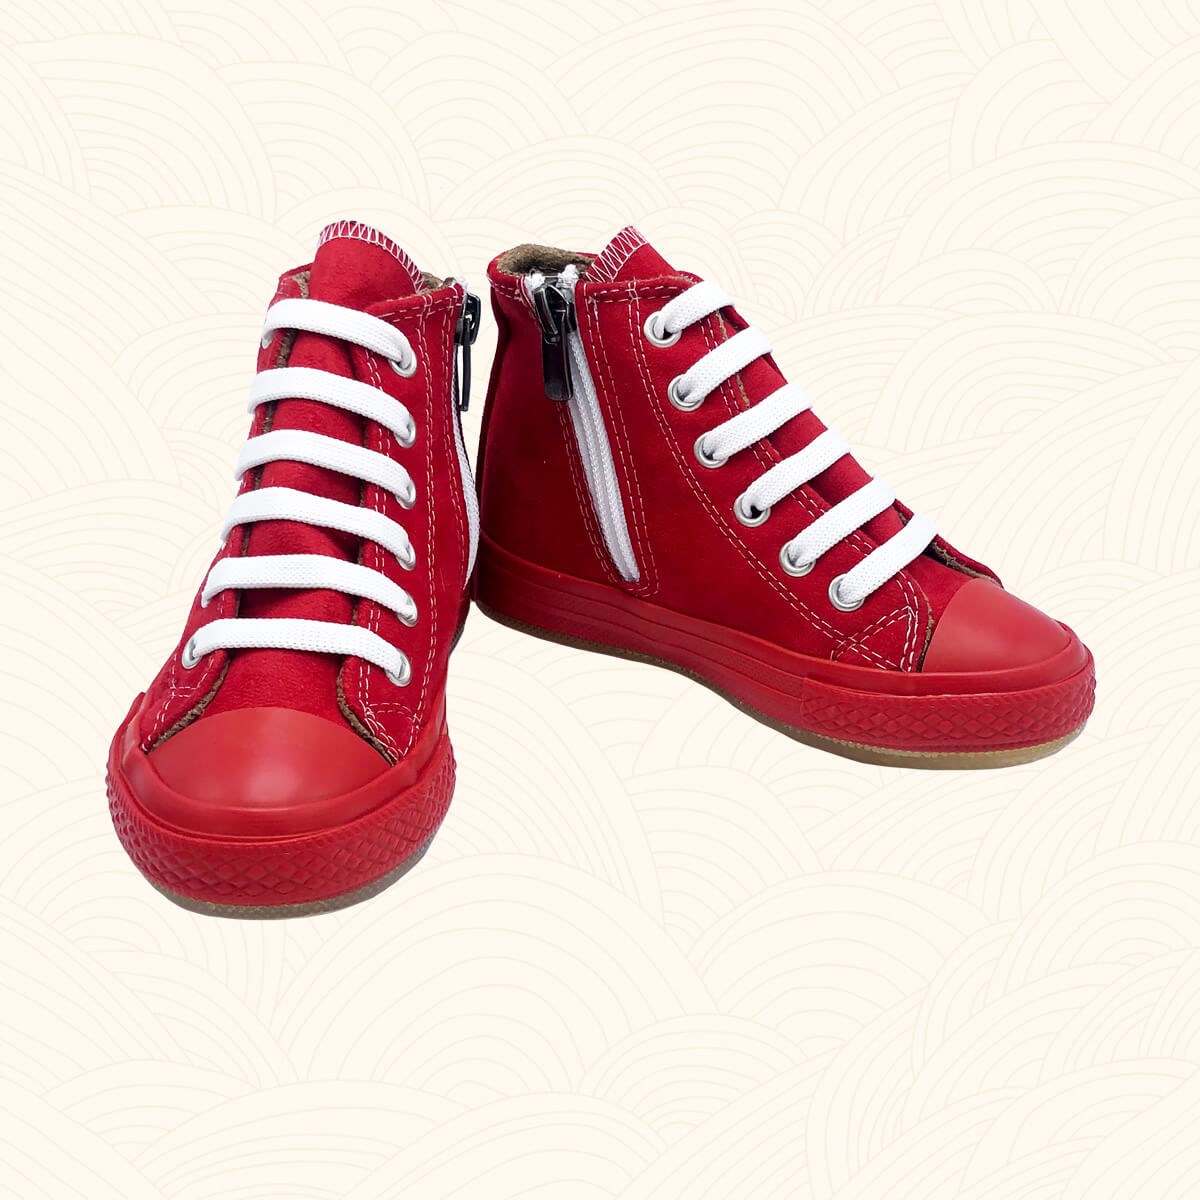 Kışlık Çocuk Spor Ayakkabı Killah - Kırmızı Renk 2141 | Lilbugga